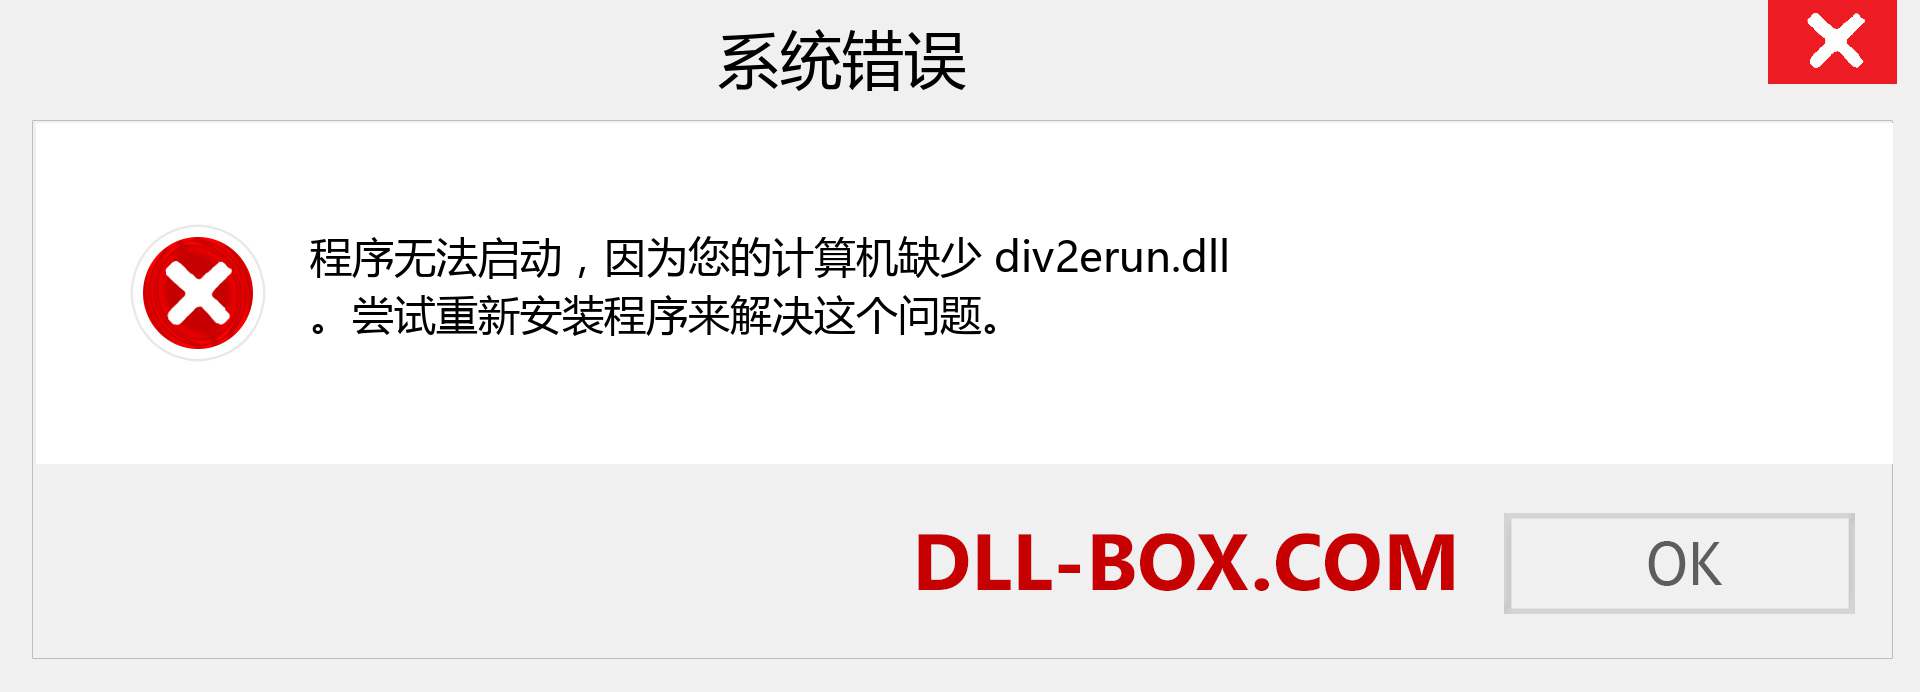 div2erun.dll 文件丢失？。 适用于 Windows 7、8、10 的下载 - 修复 Windows、照片、图像上的 div2erun dll 丢失错误